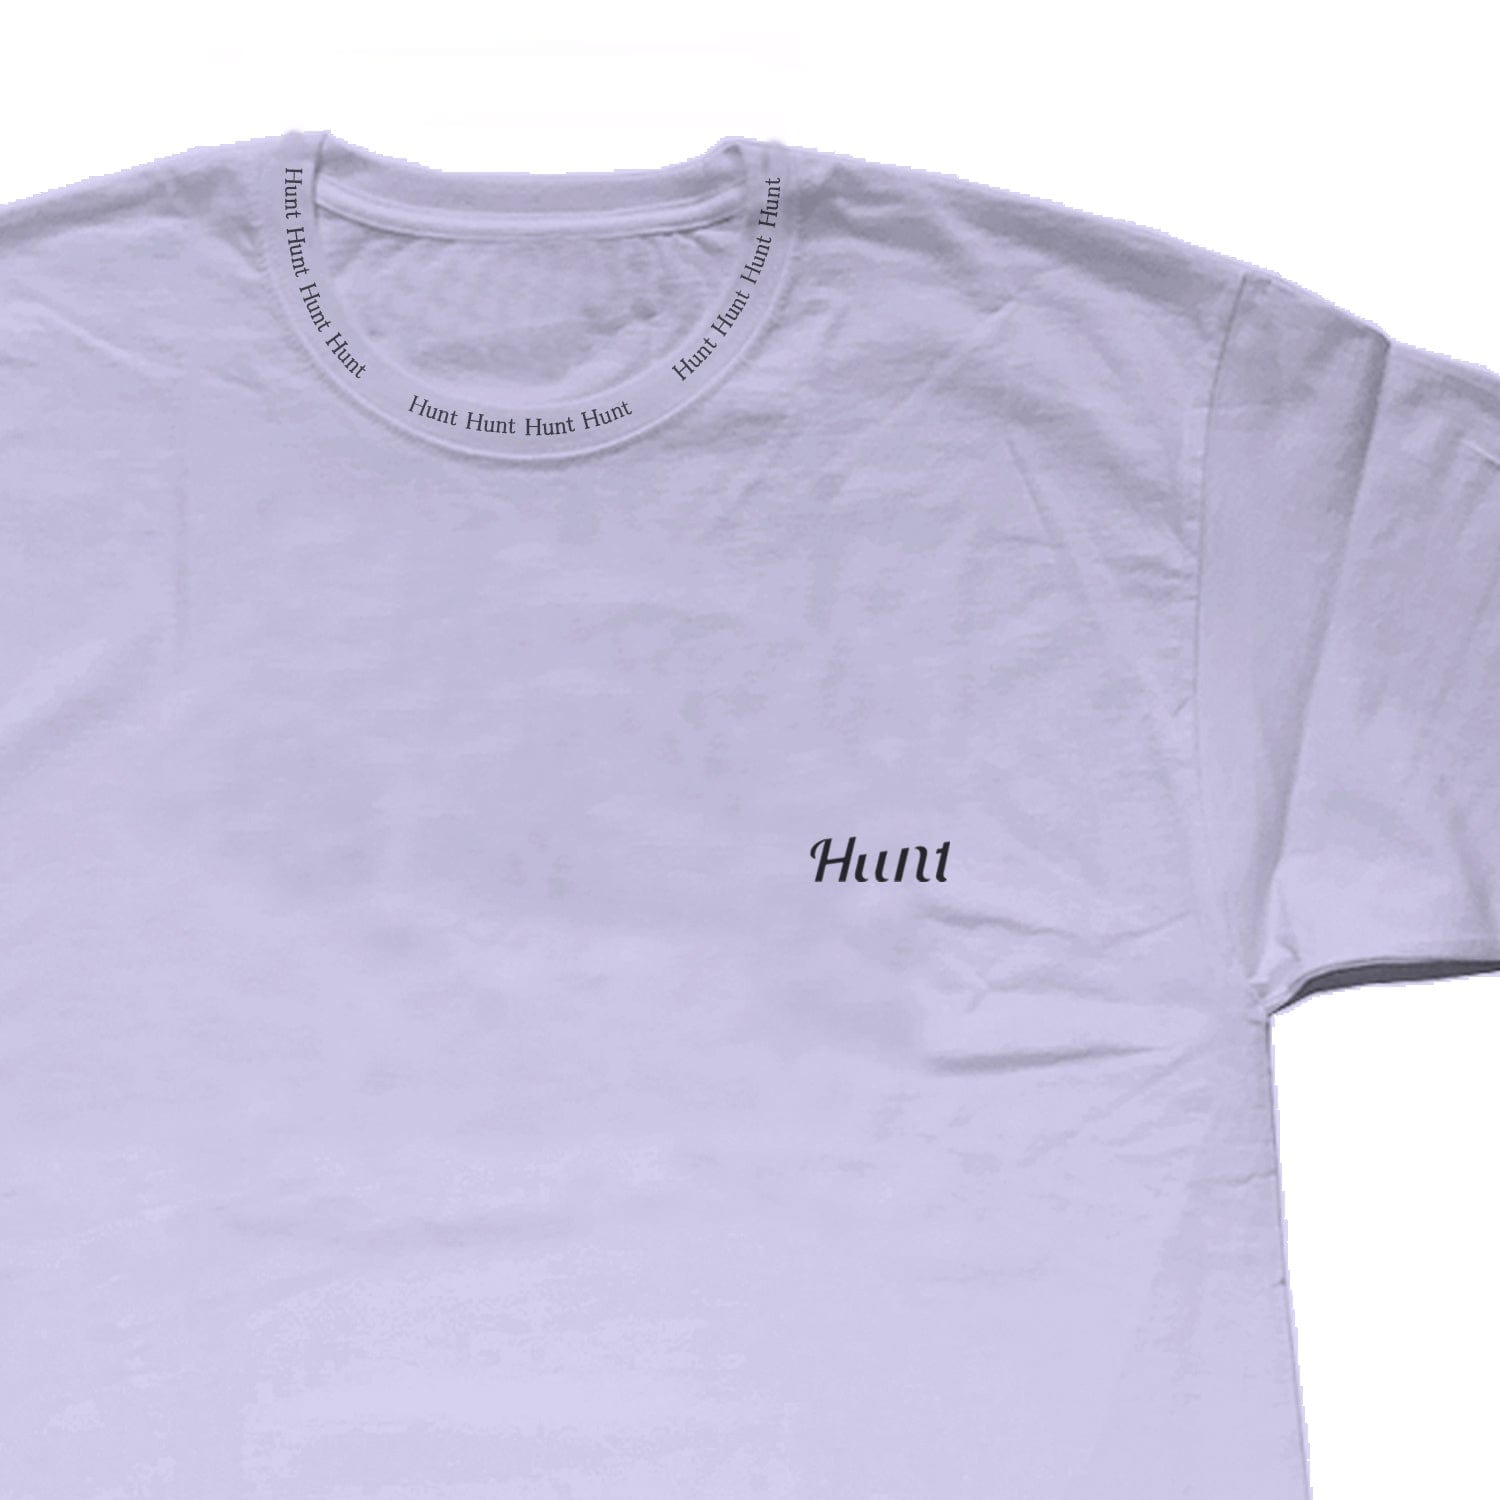 Hunt Tokyo "4 Hunt "Neck Print T-shirts - Hunt Tokyo